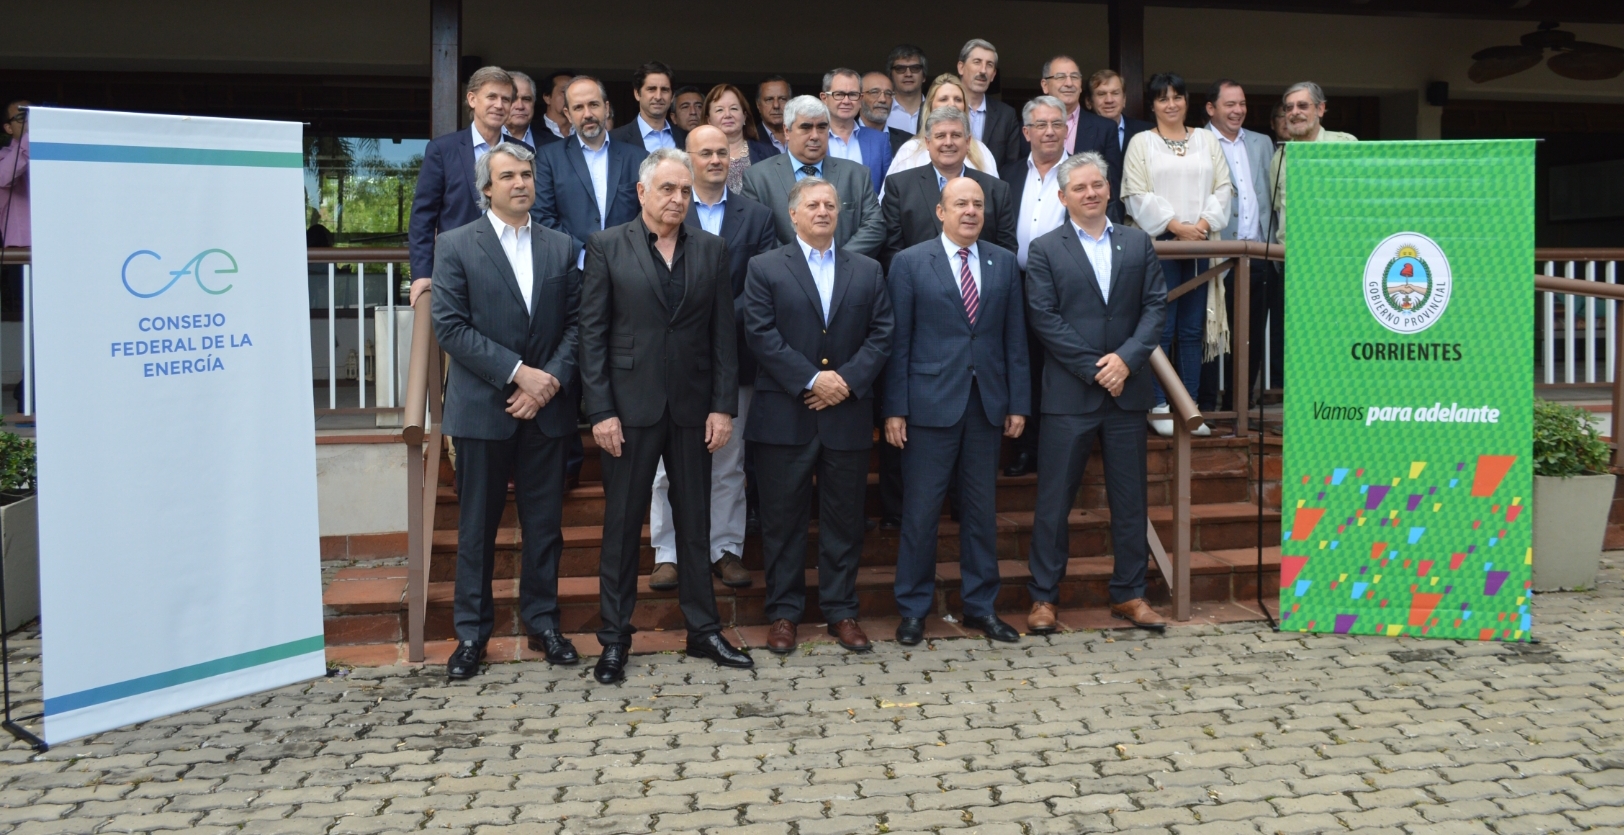 Tercera reunión del Consejo Federal de Energía en Corrientes